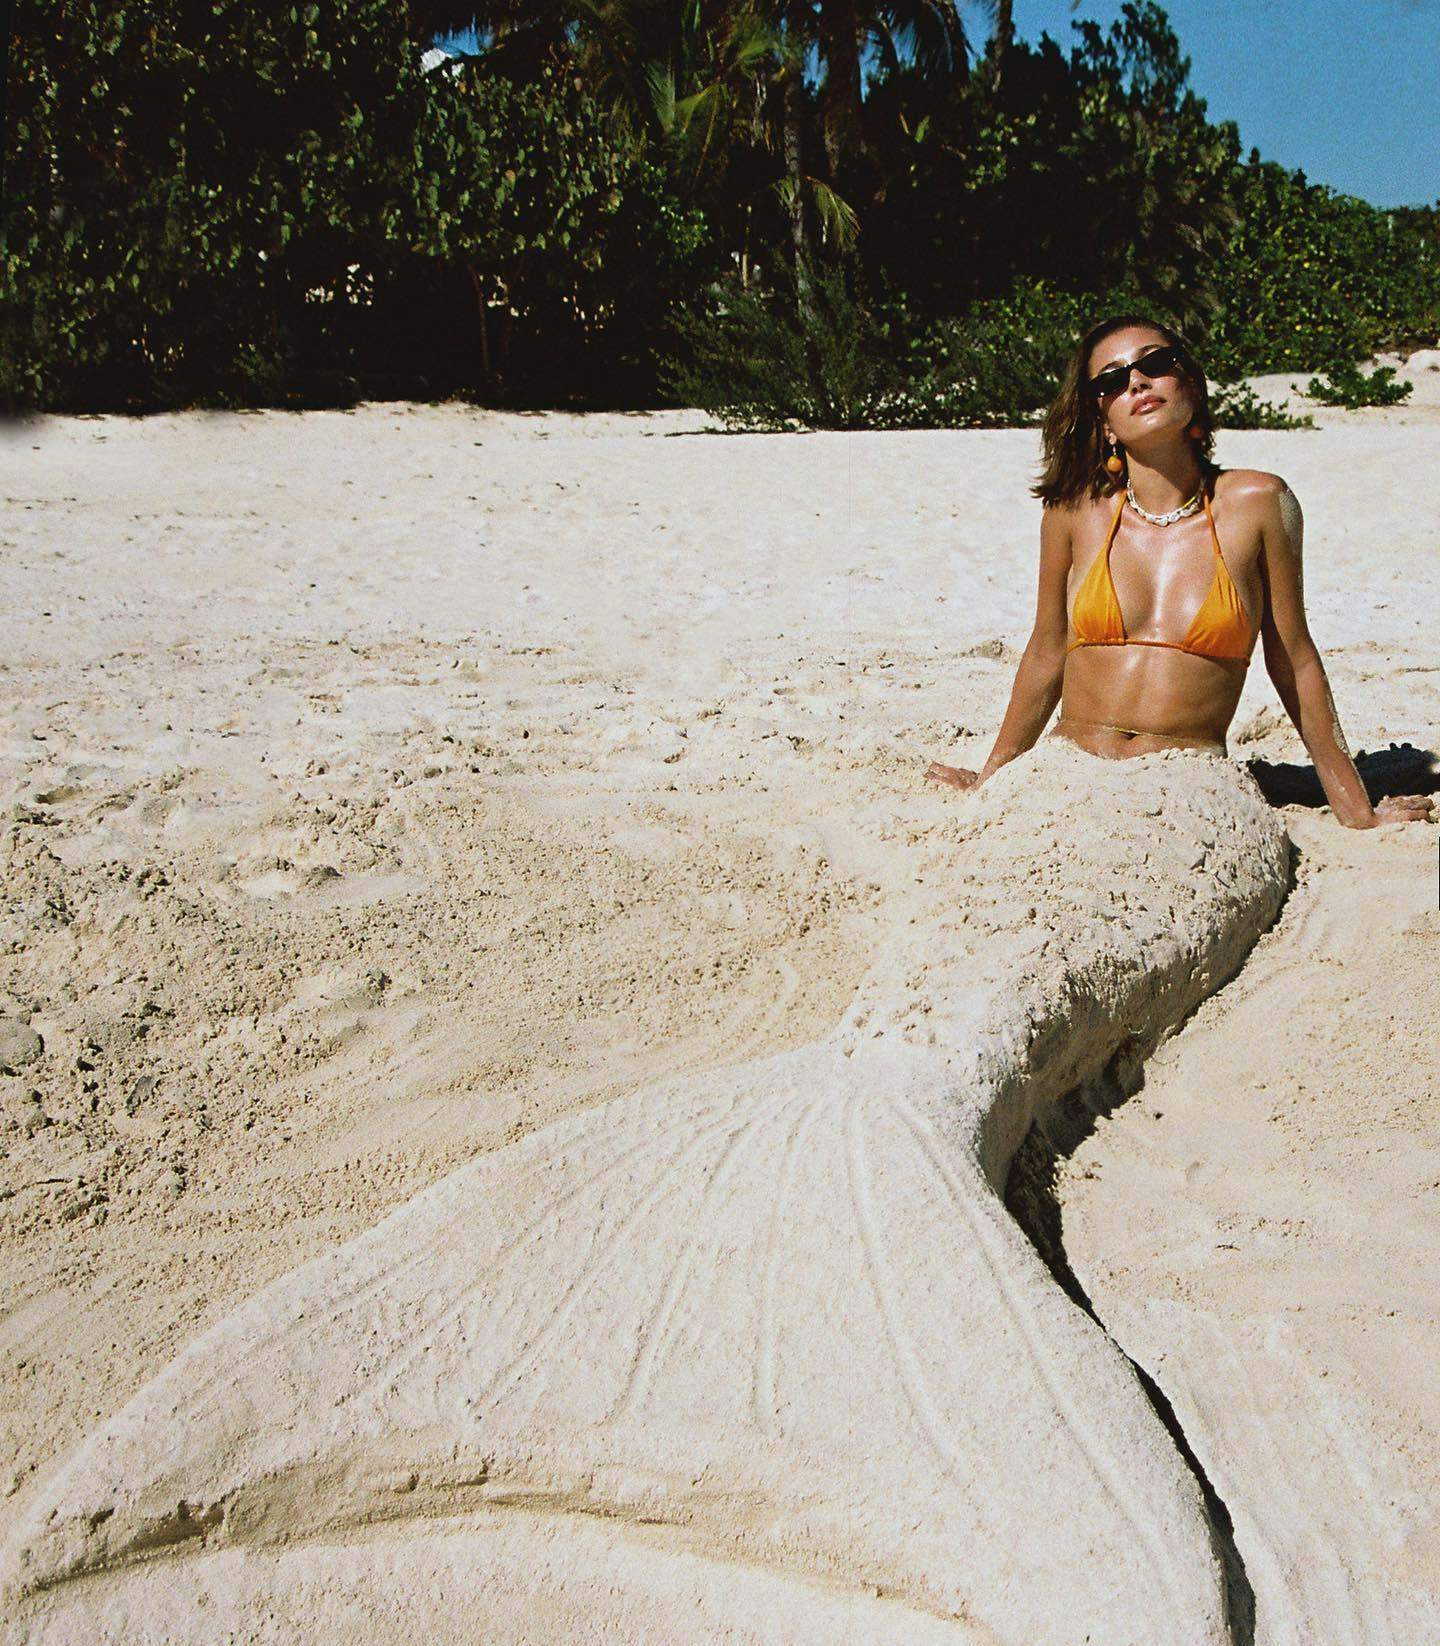 Ensemble de bikini confortable - vêtements de plage durables pour